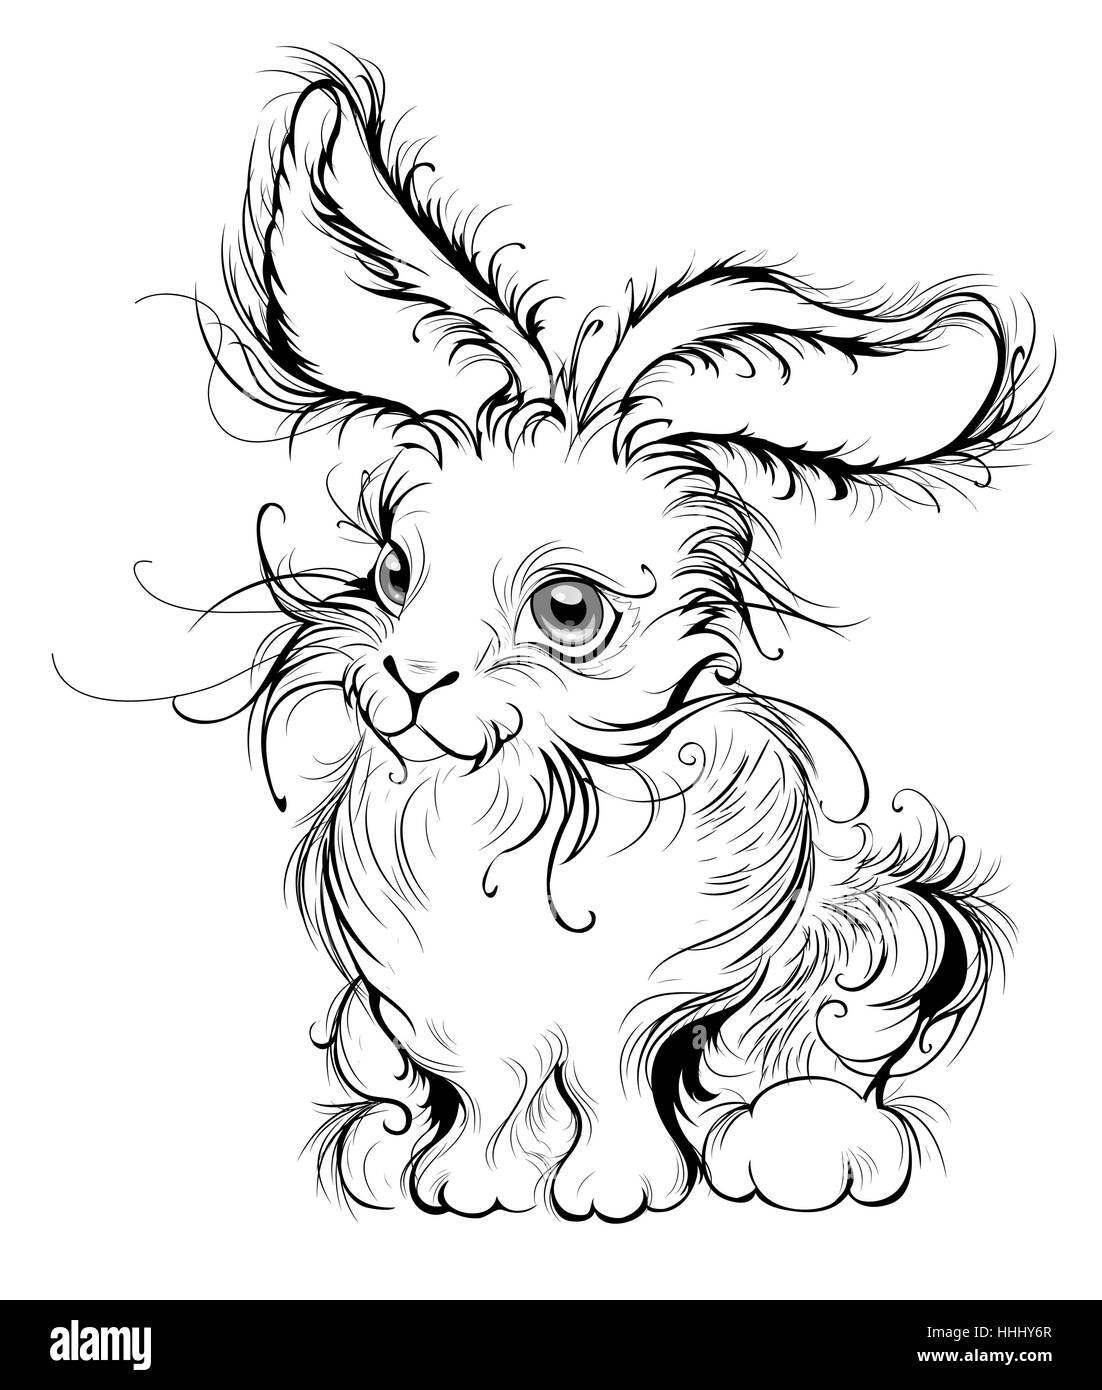 Artísticamente pintadas en negro liso líneas estilizadas, fluffy bunny con grandes orejas, un fondo blanco. Ilustración del Vector